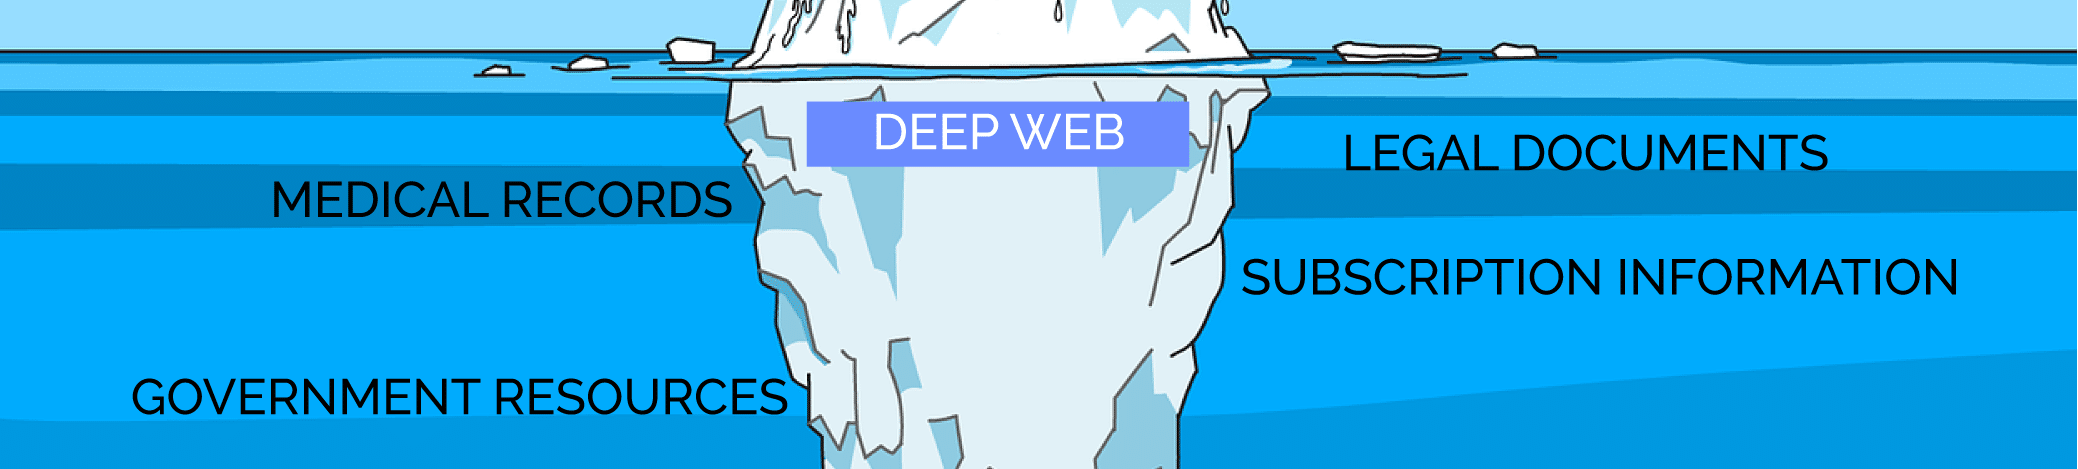 Deep Web uses